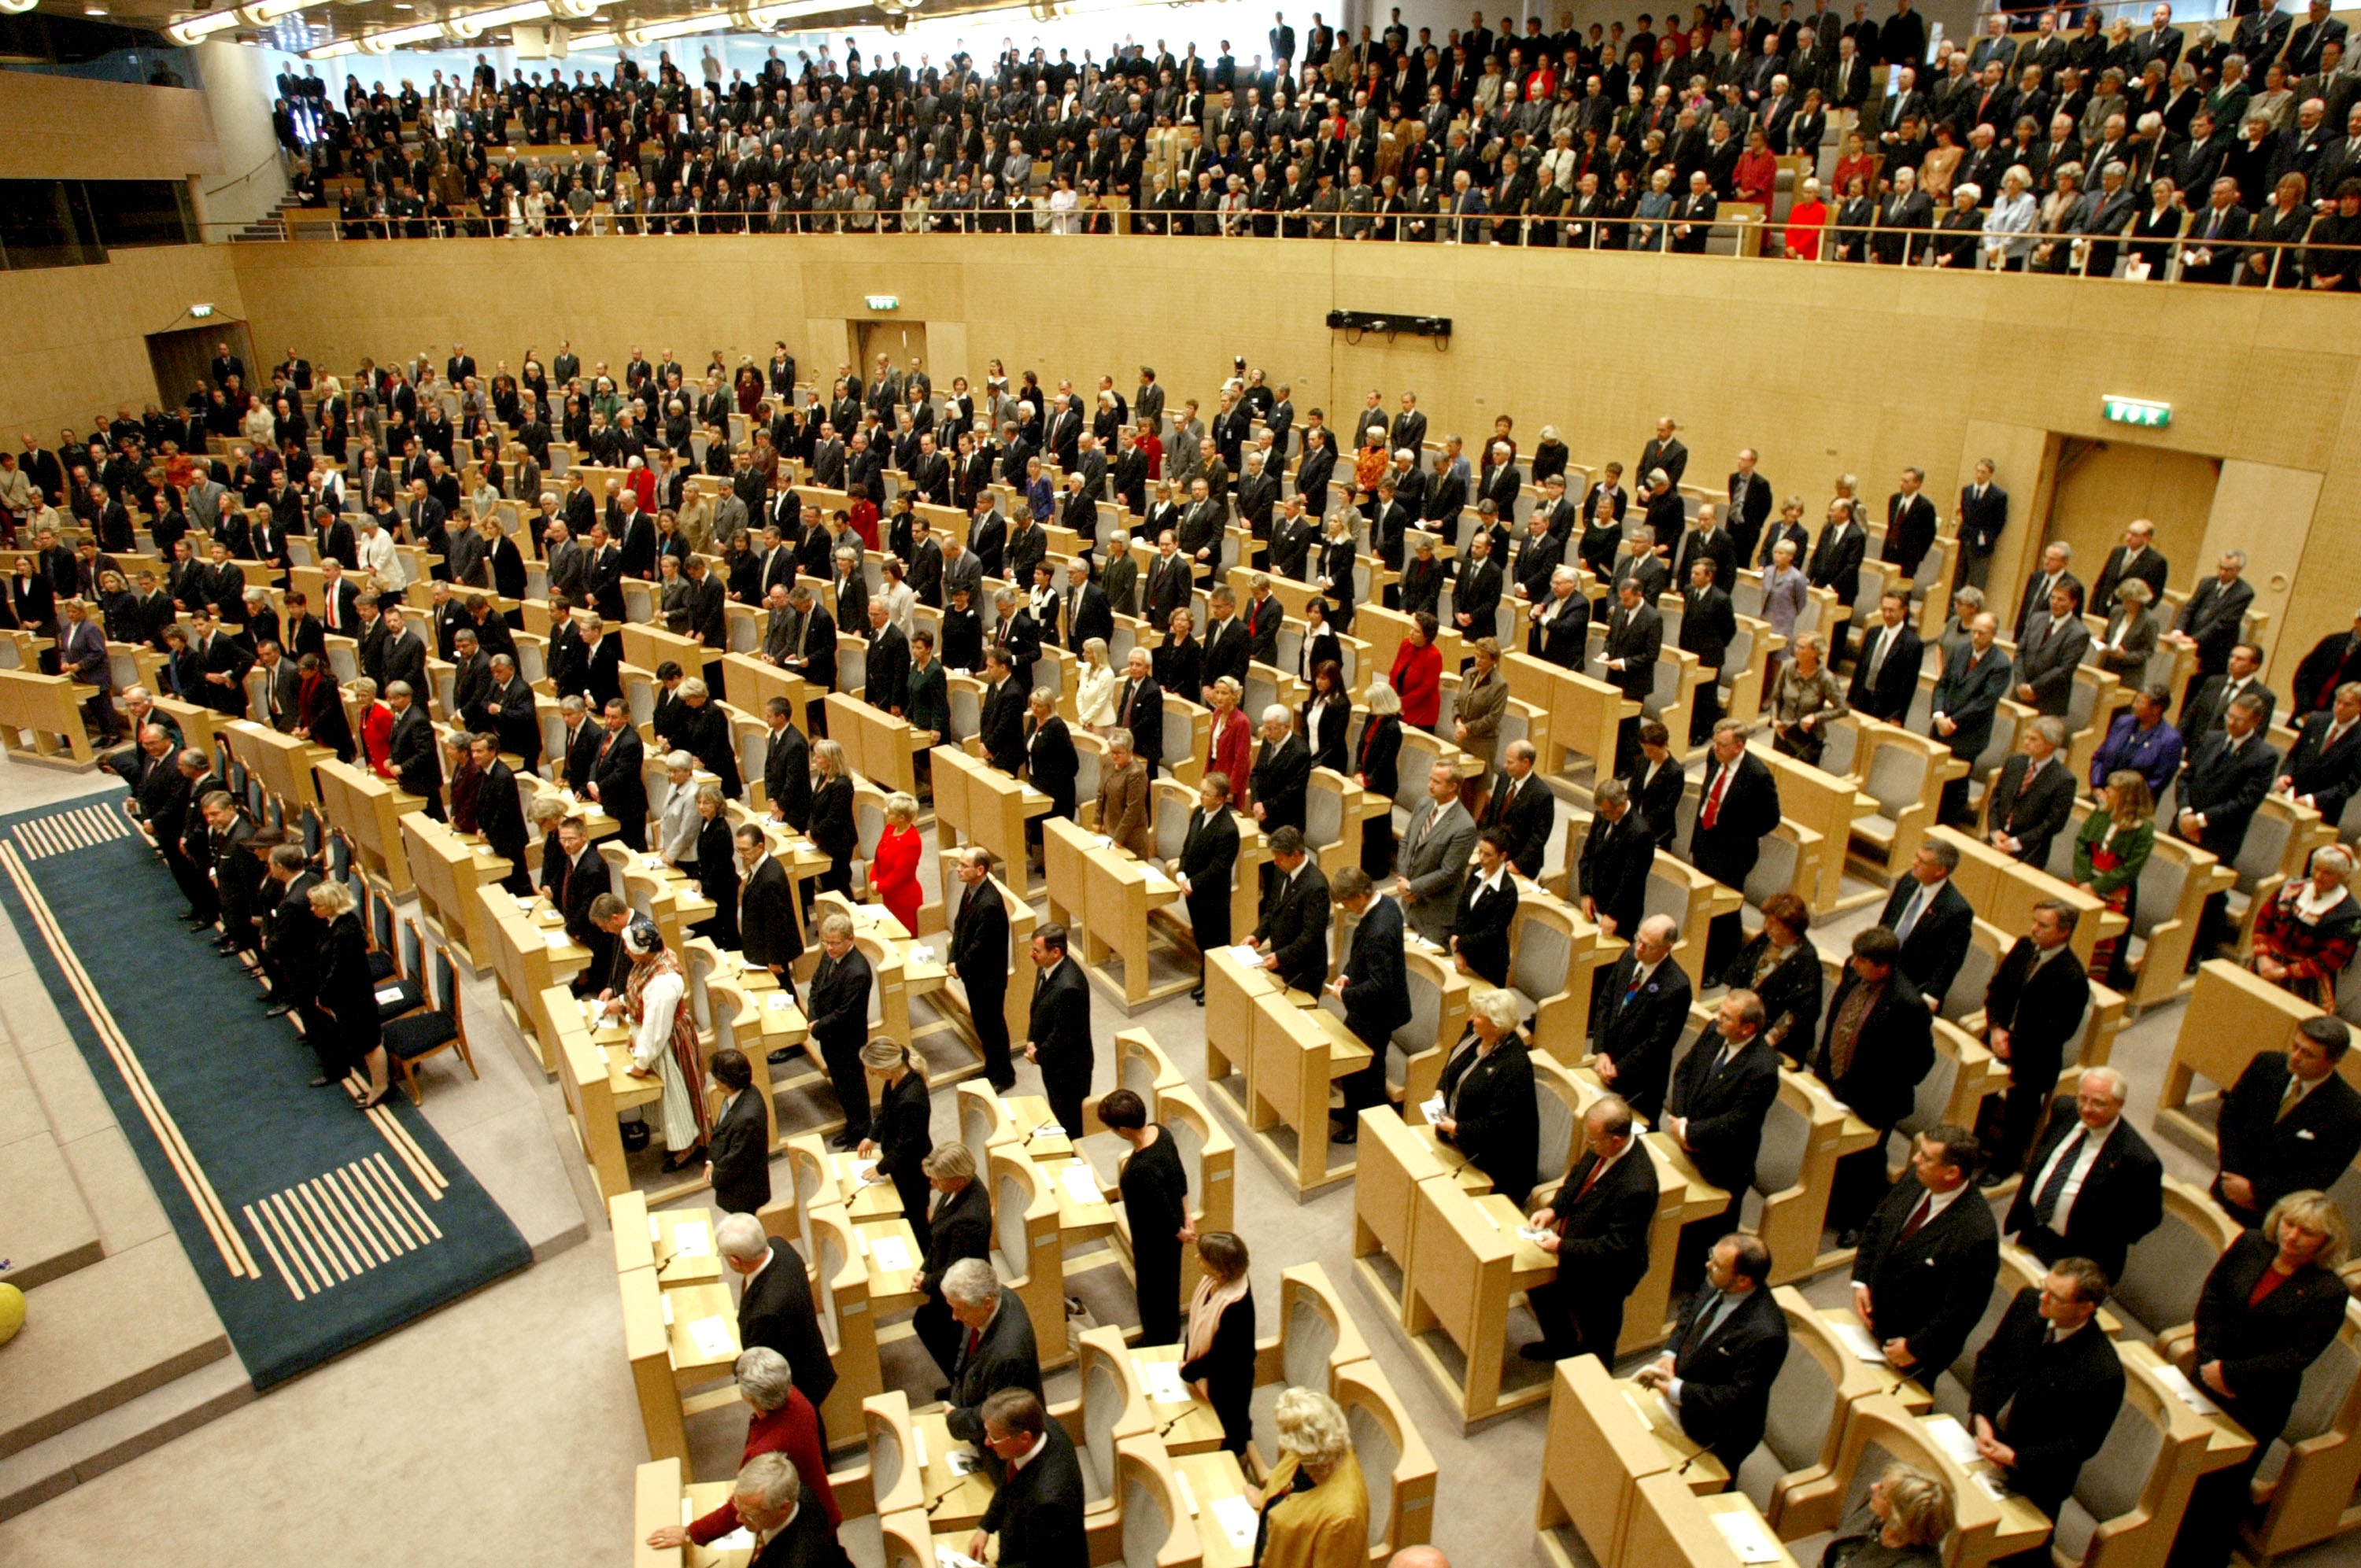 Regeringen, Sveriges sexigaste politiker, Politik, Maktkamp24, Riksdagsvalet 2010